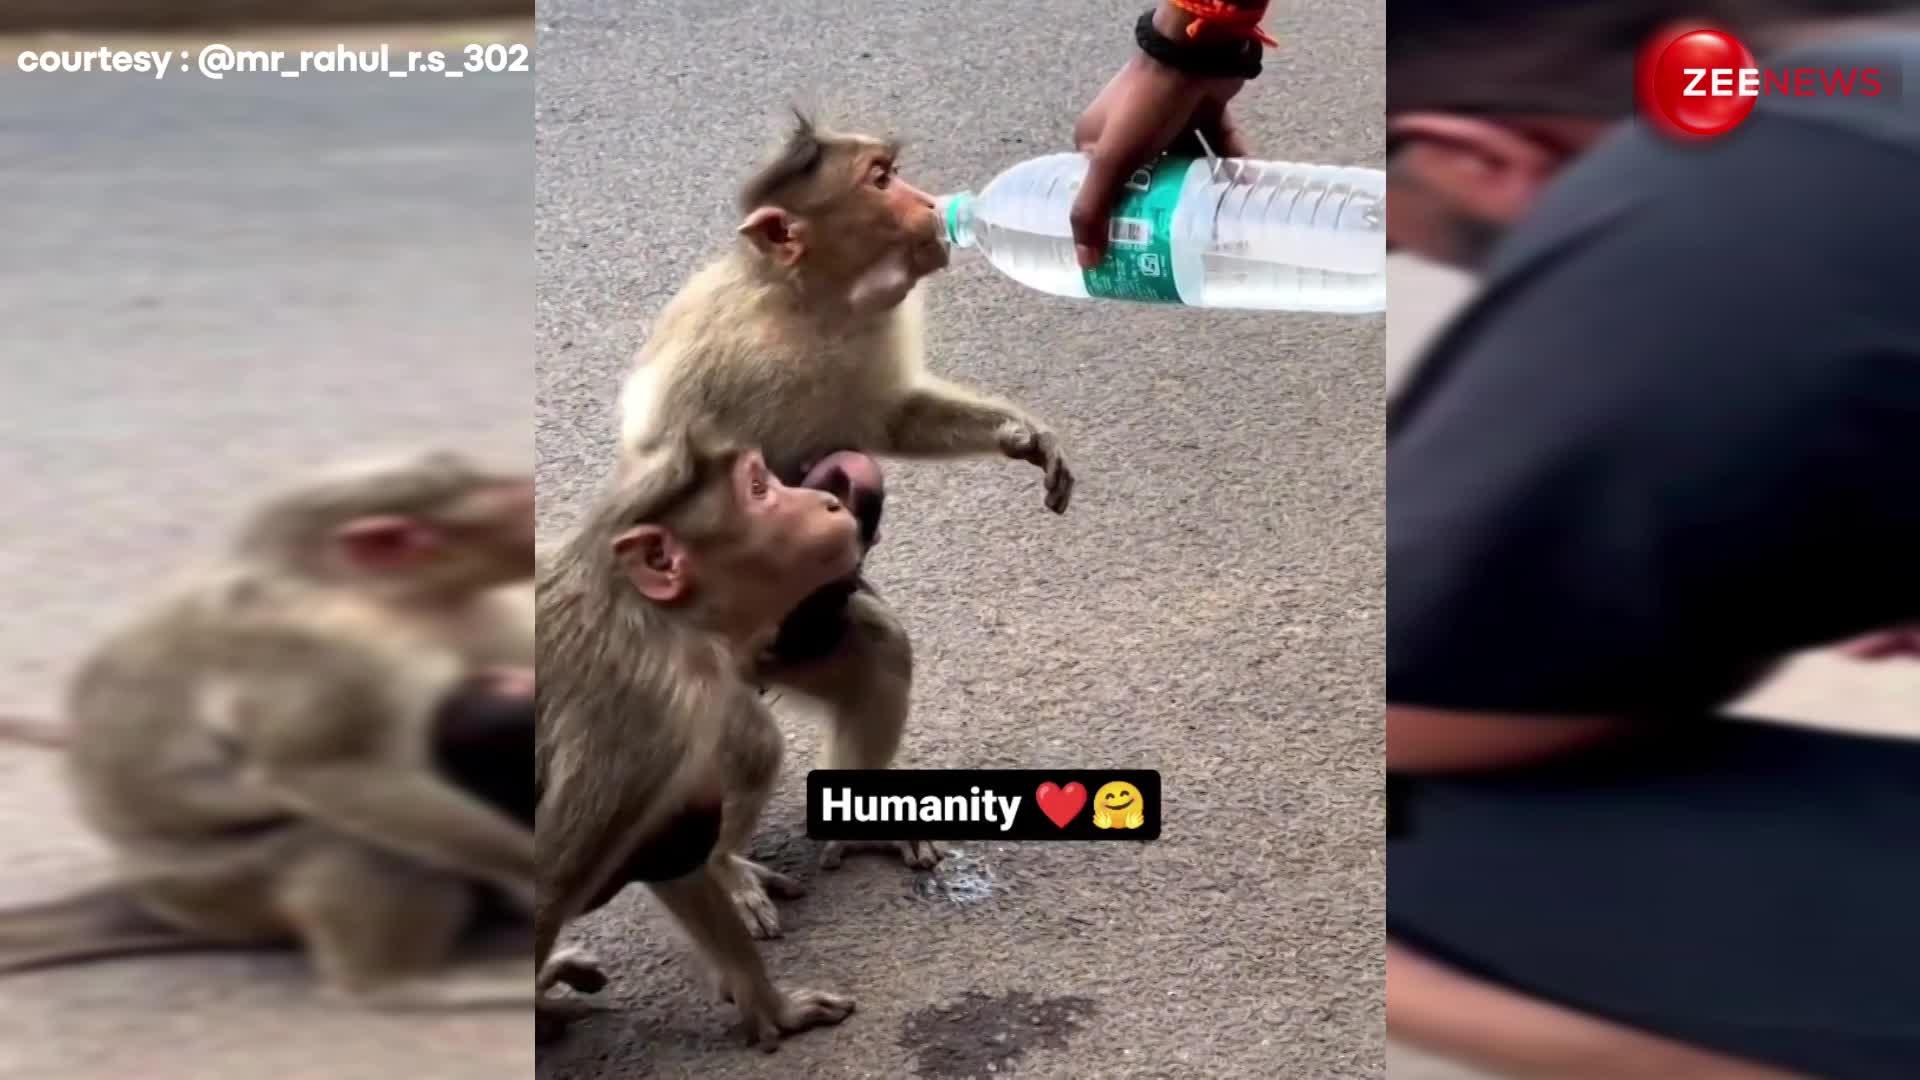 गर्मी से परेशान हुआ बंदर, तो शख्स ने कुछ ऐसे बुझाई प्यास, वायरल हुआ दिल छू लेने वाला VIDEO